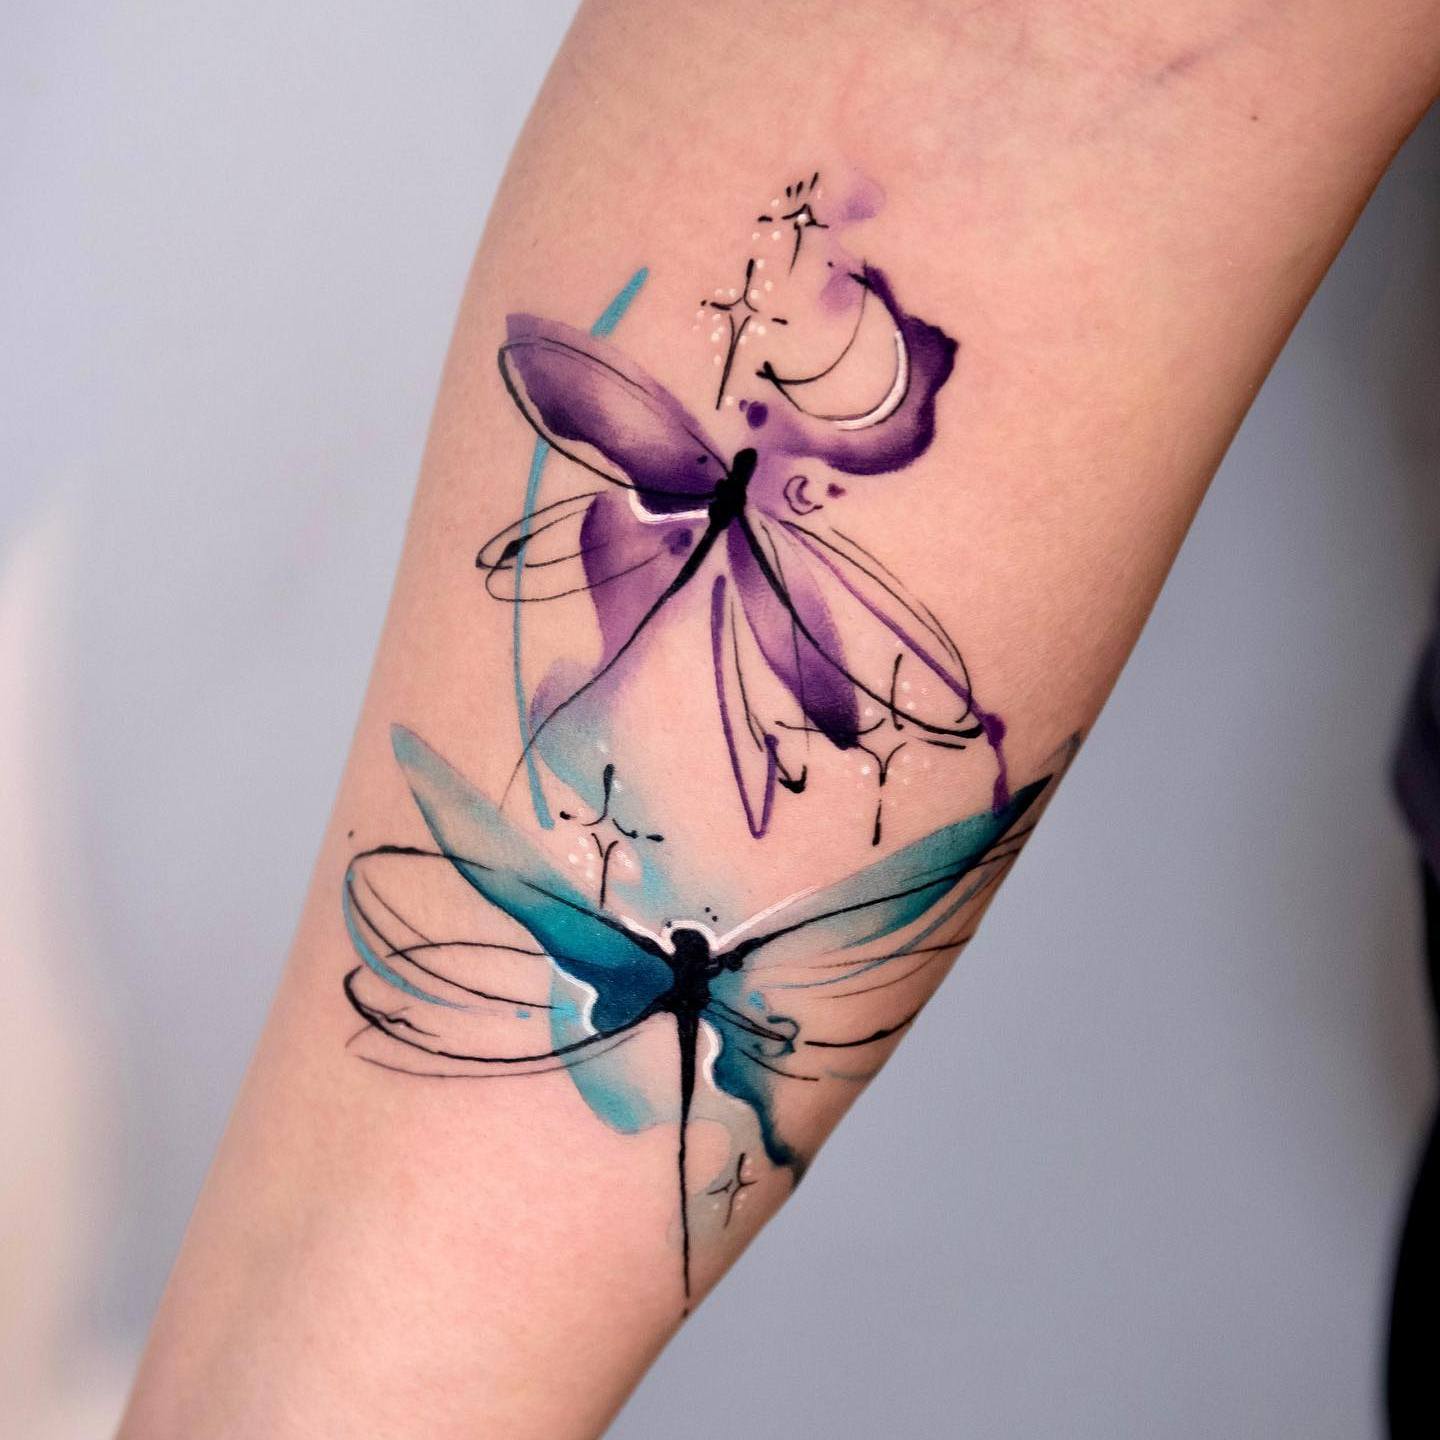 Akwarelowy tatuaż przedstawiający dwie ważki w spokojnych kolorach niebieskim i fioletowym